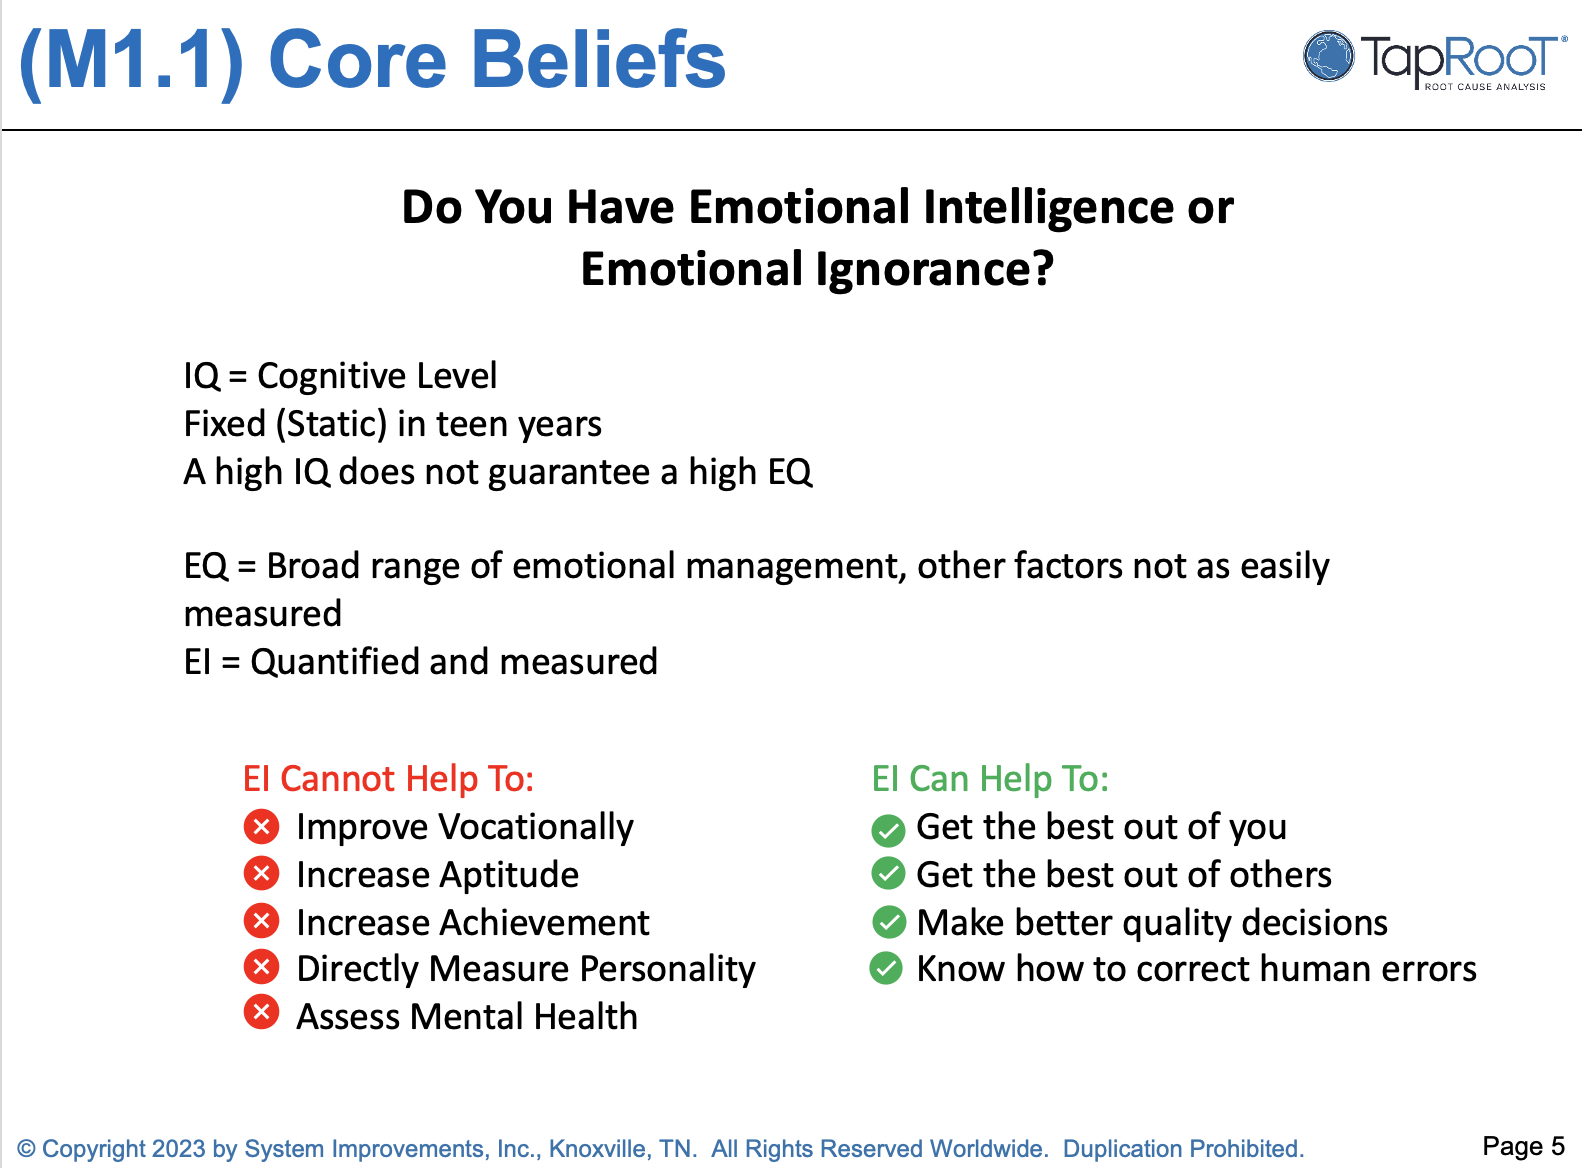 Emotional ignorance and emotional intelligence comparison